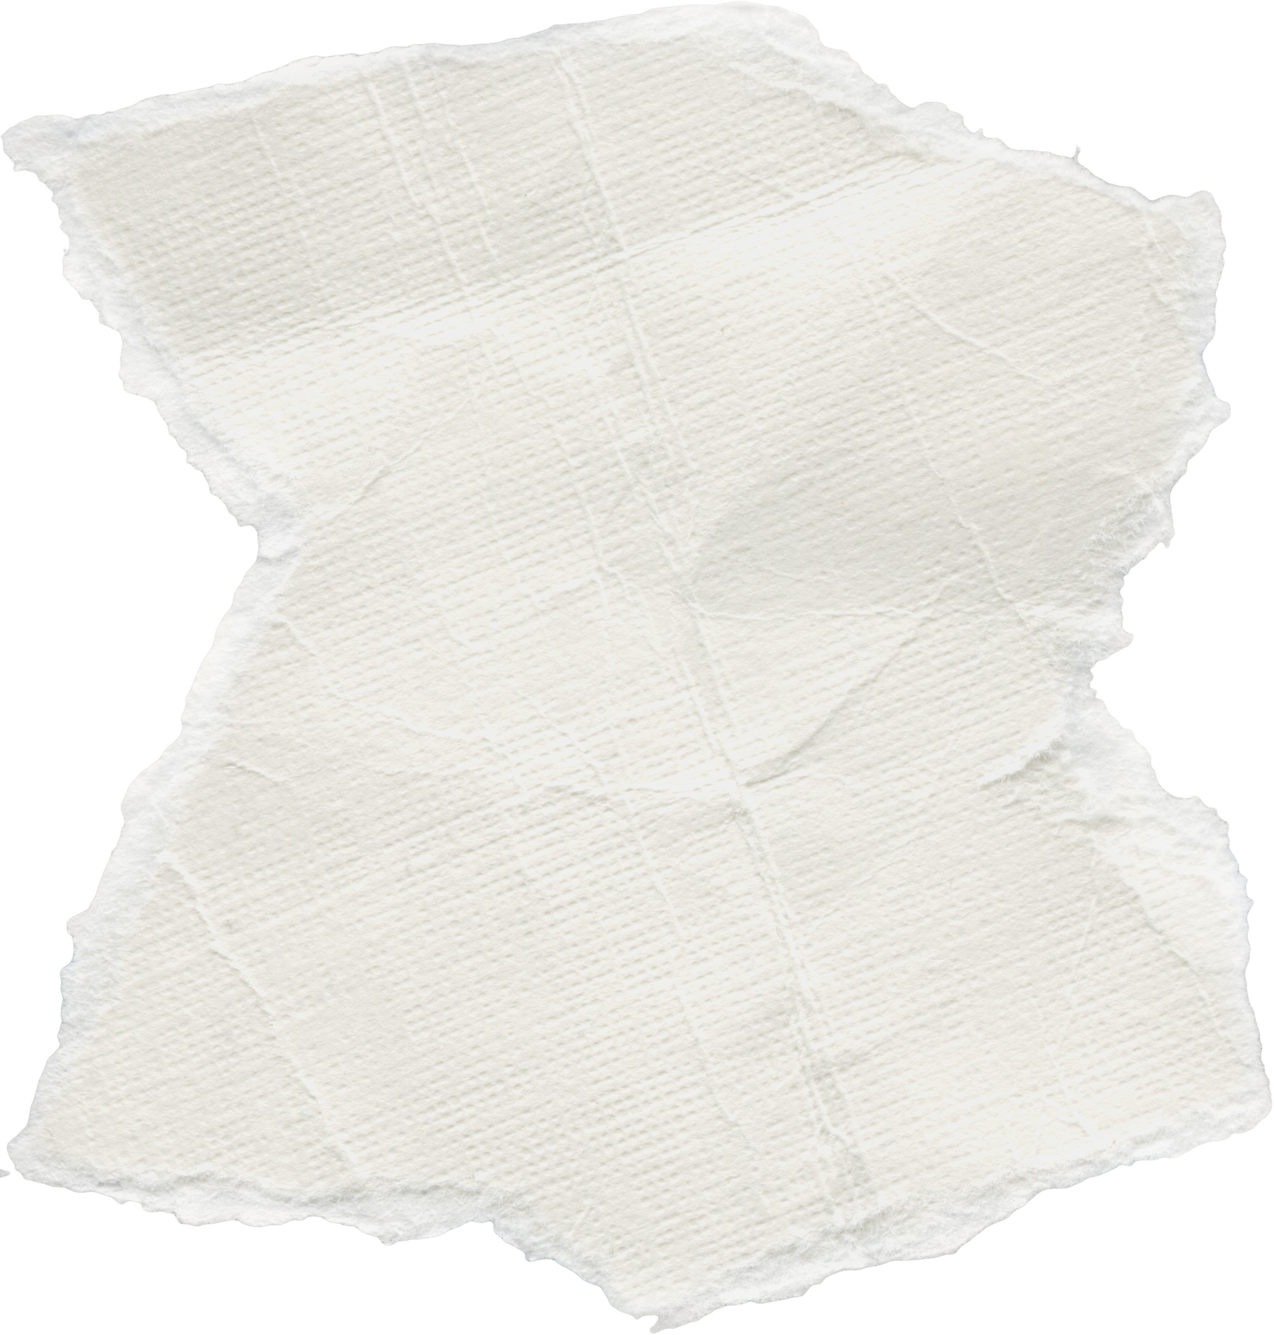 Scrap of Crumpled White Paper